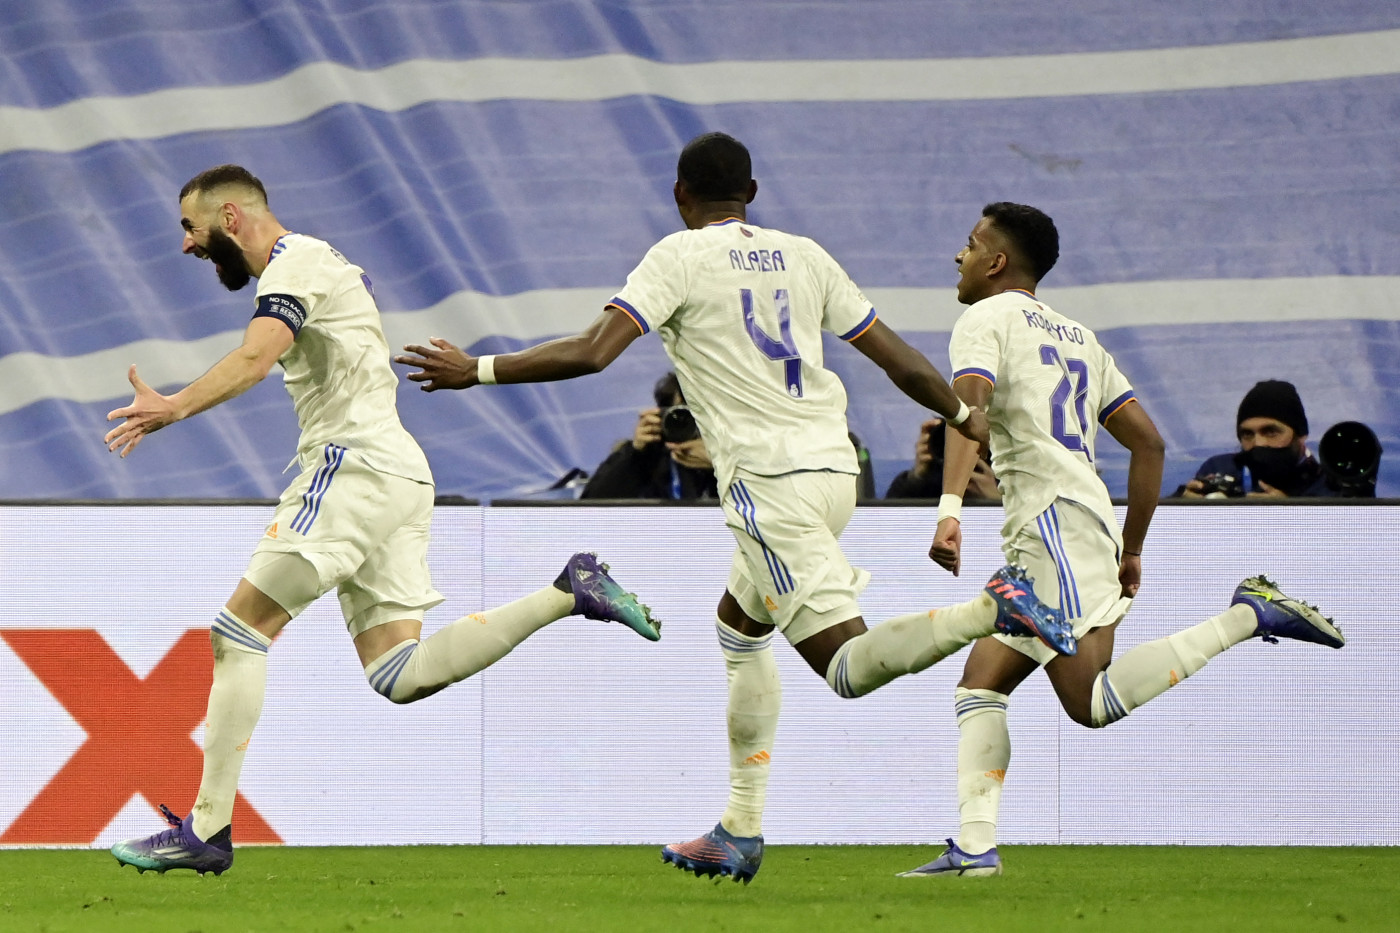 Jogadores do Real Madrid comemoram gol contra PSG na Liga dos Campeões